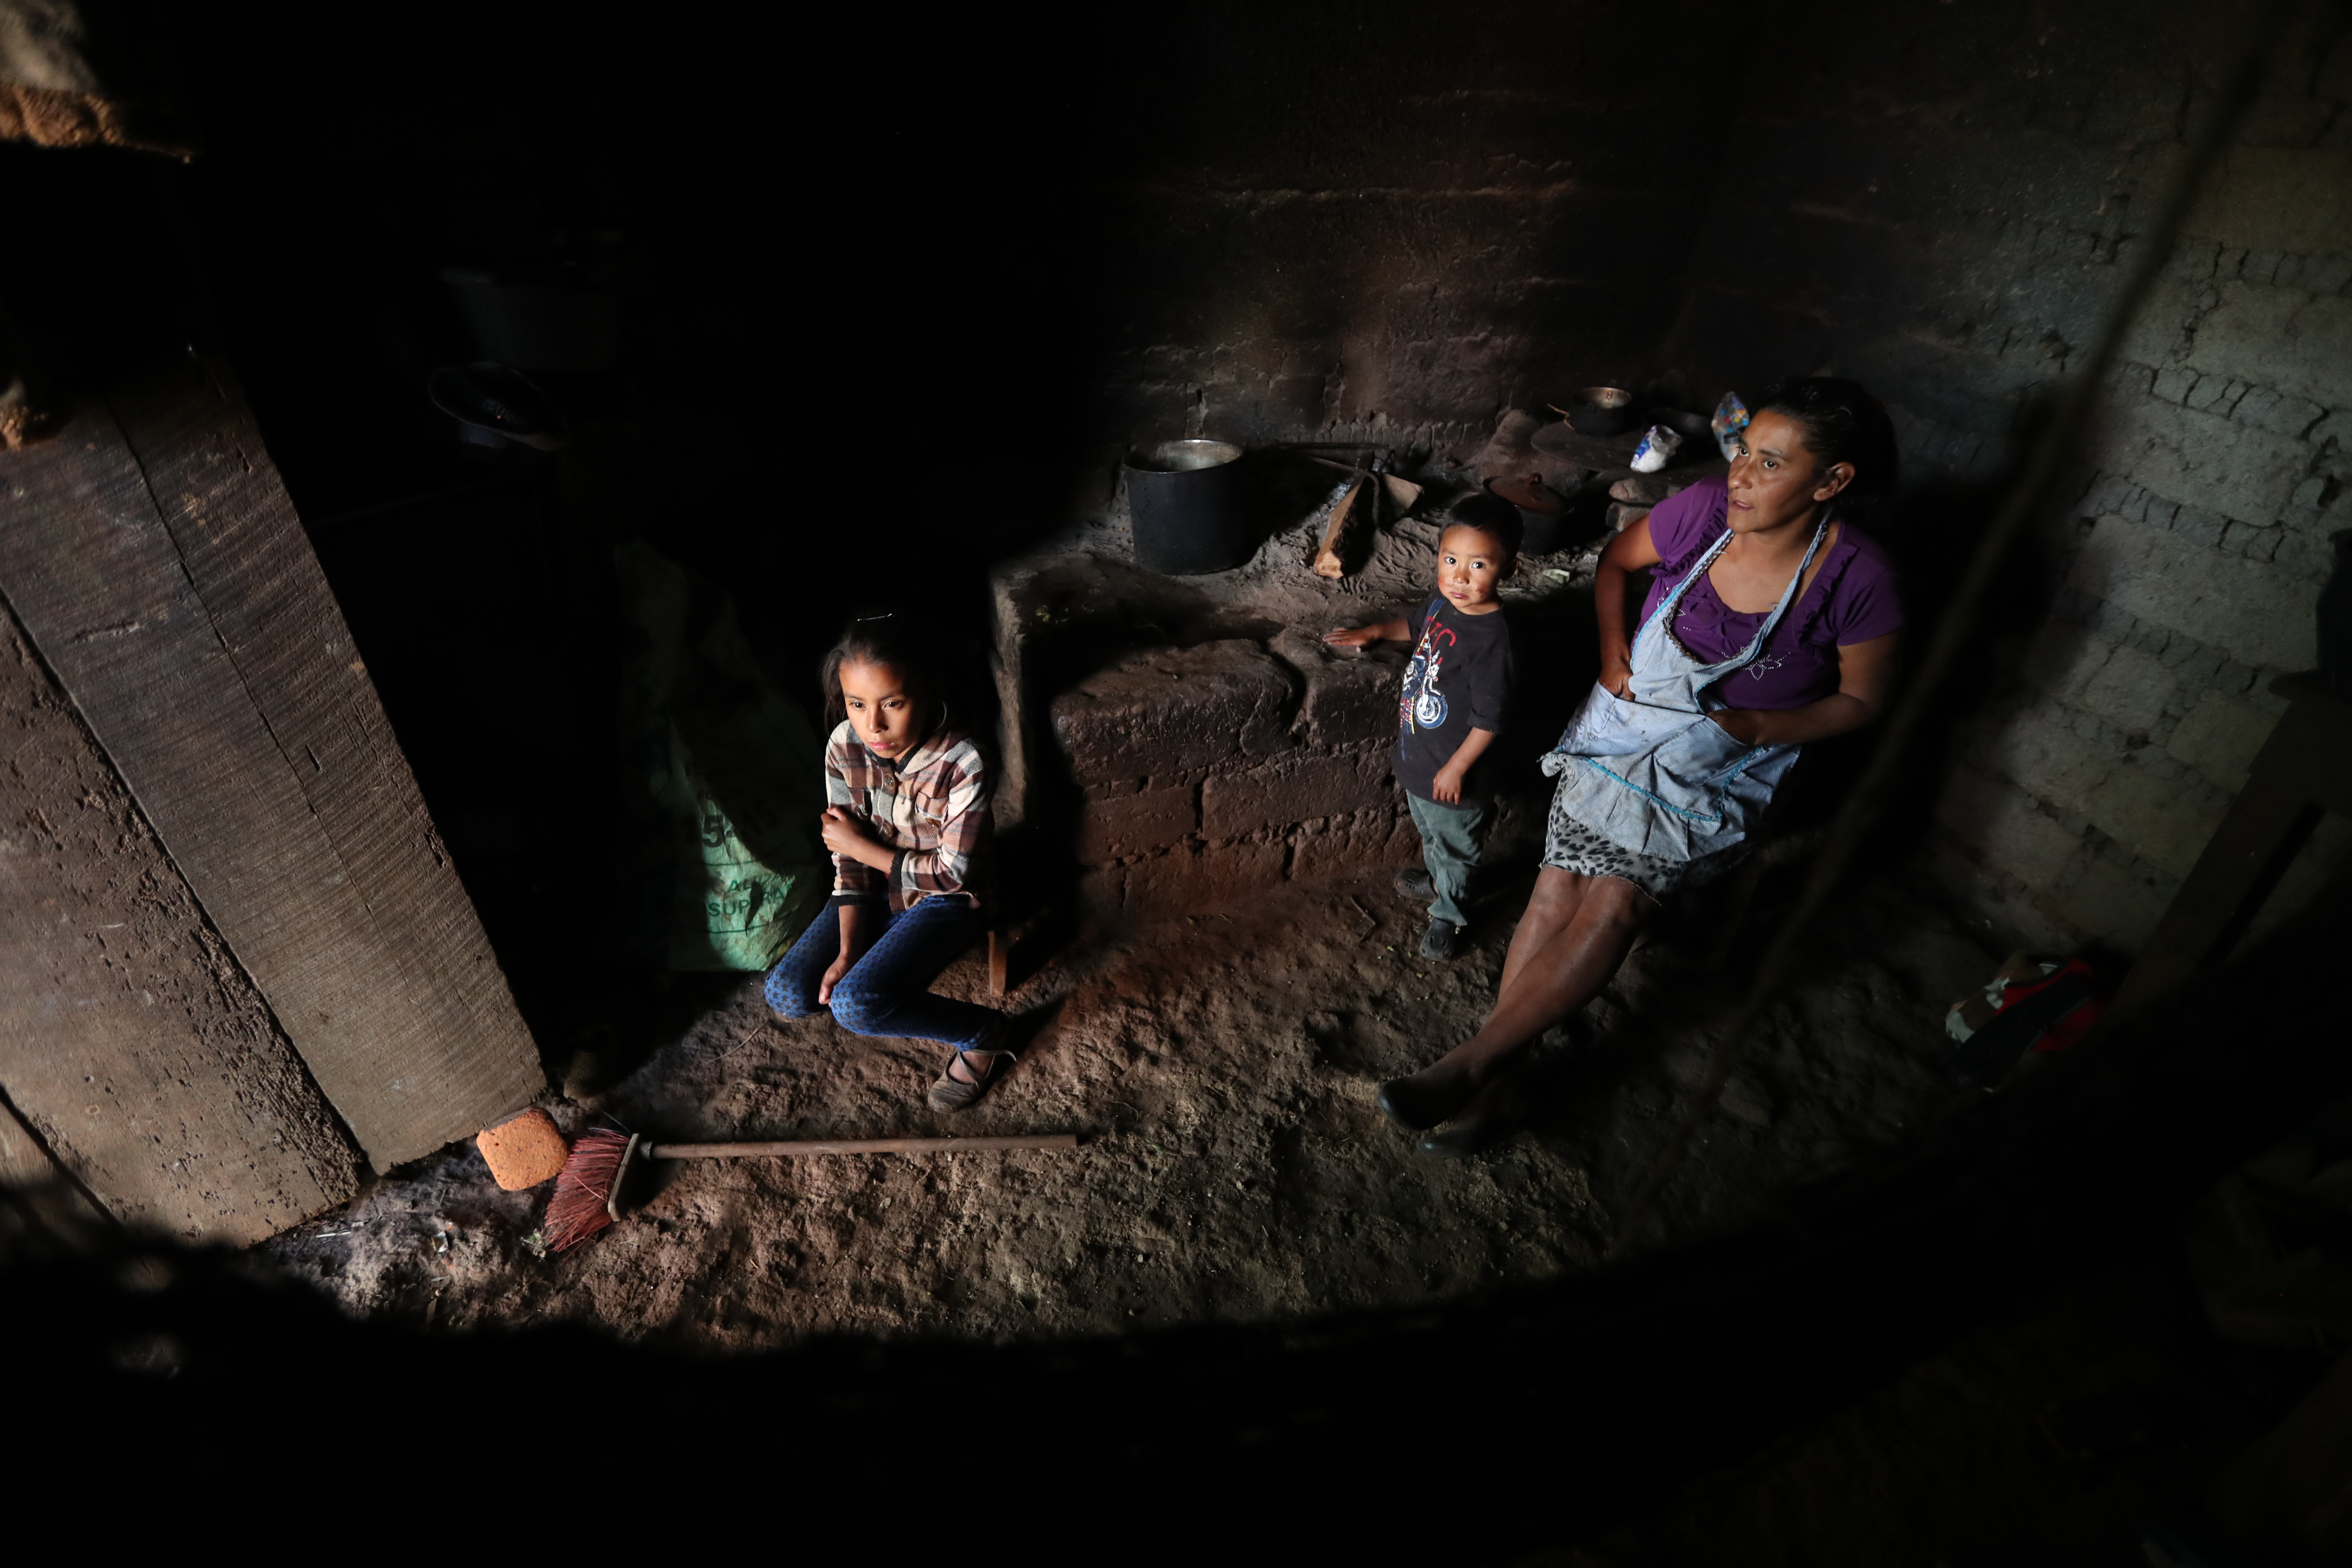 Los guatemaltecos tienen una percepción poco alentadora de su bienestar económico y del rumbo que lleva el país, debido a que sus necesidades no son satisfechas. (Foto Prensa Libre: Esbin García)